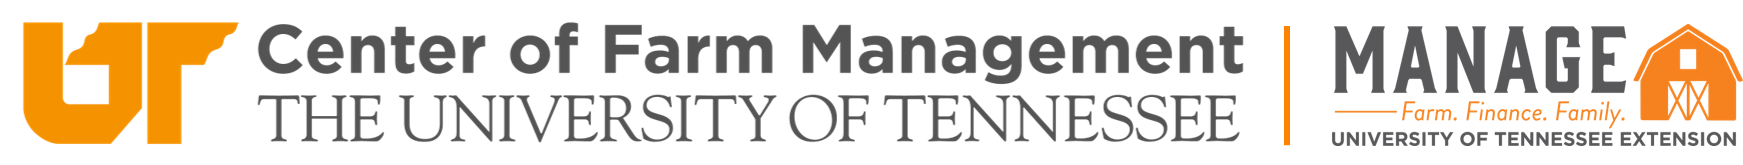 UT Center for Farm Management and Master Farm Manager Program logo